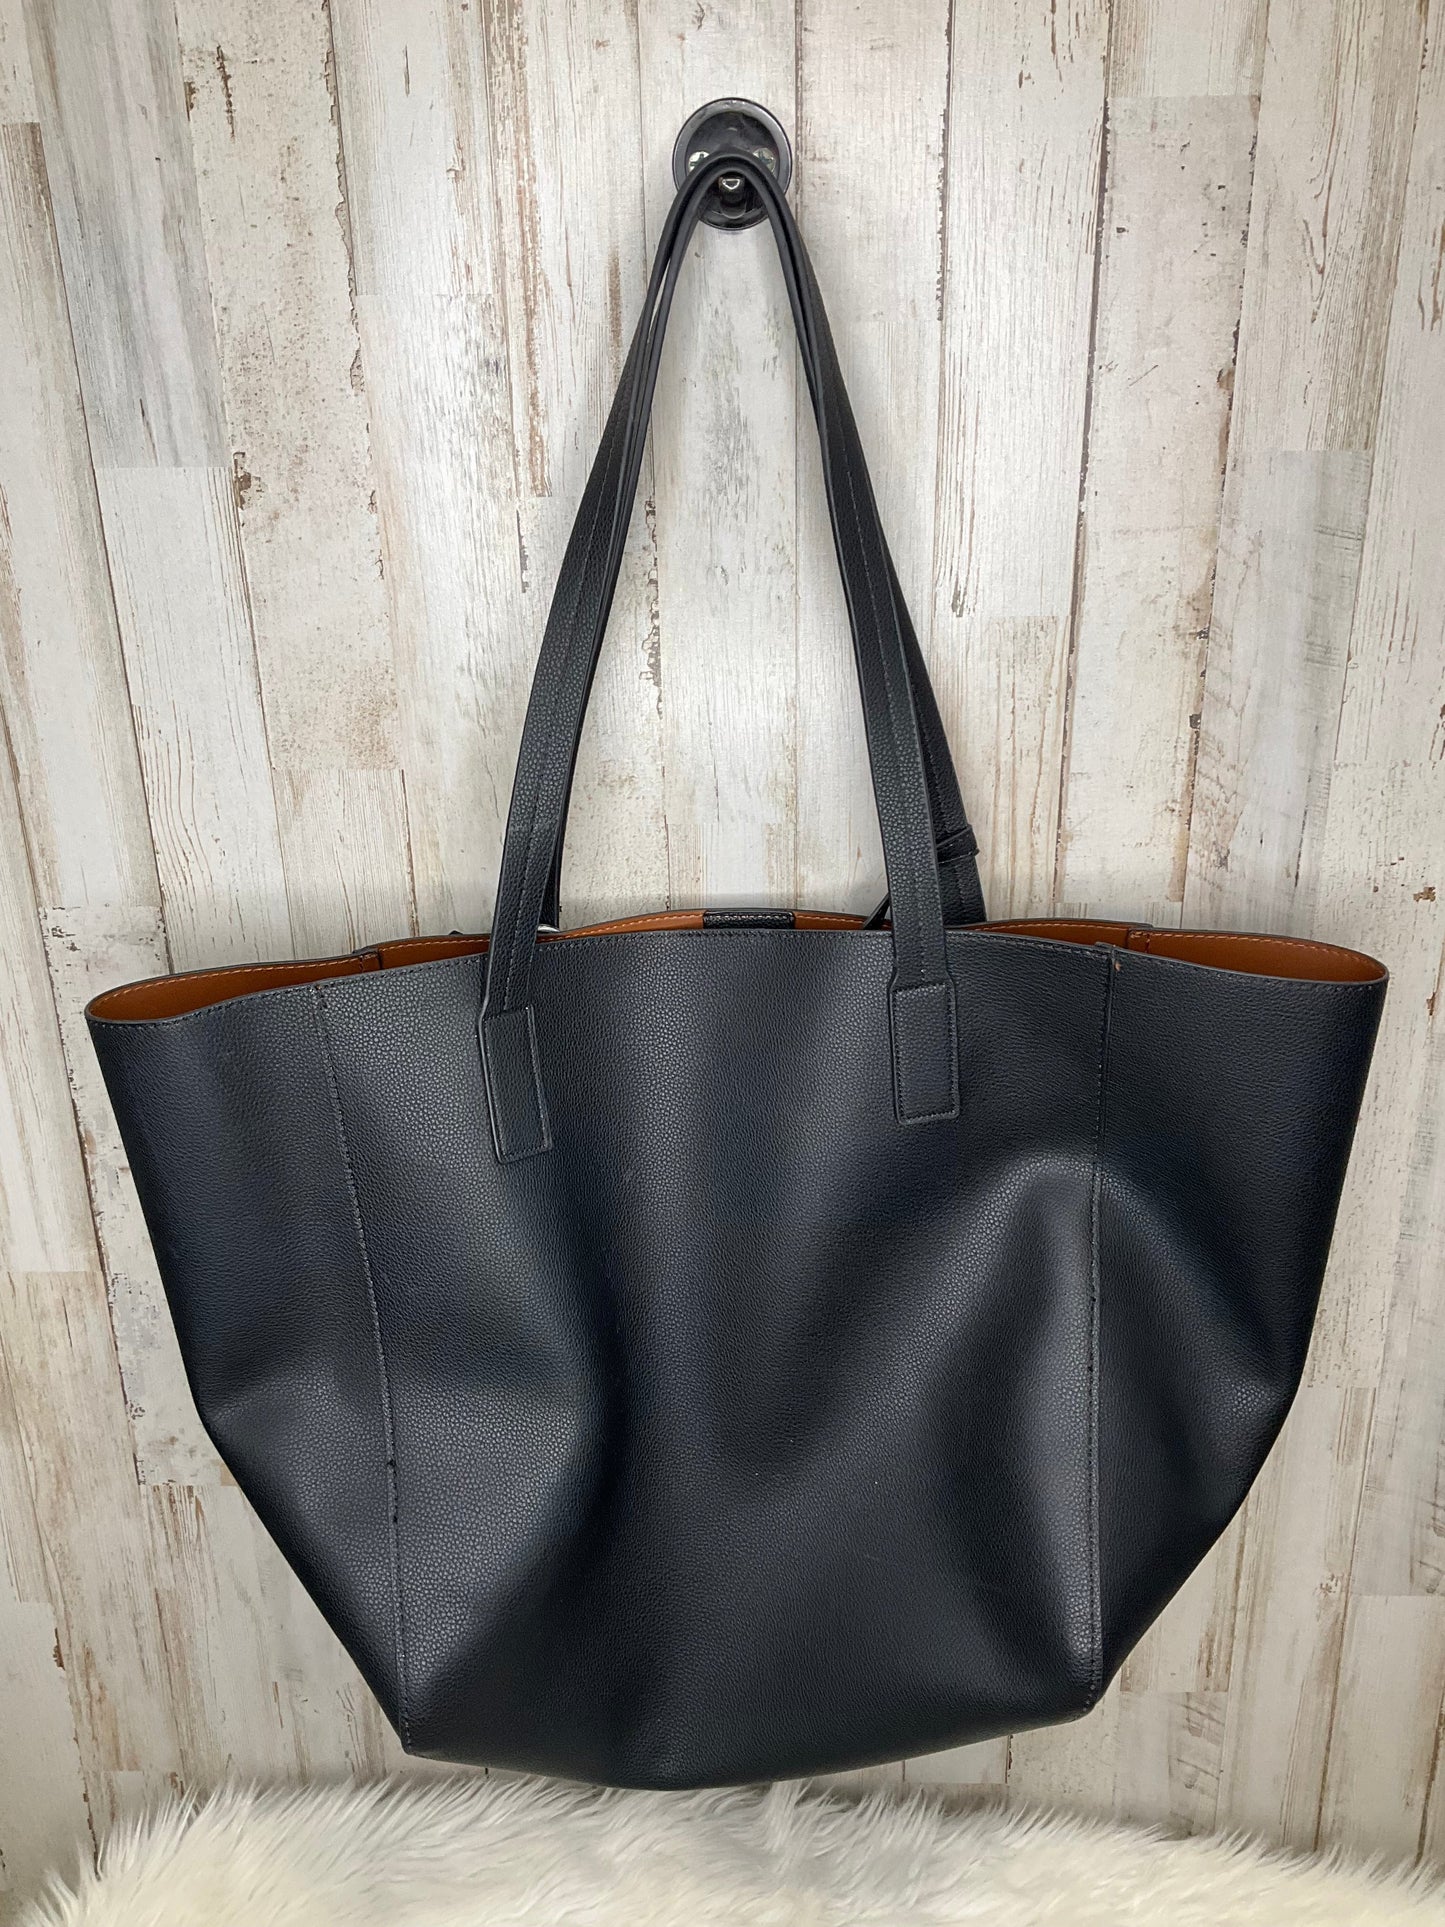 Handbag By Tommy Bahama  Size: Large